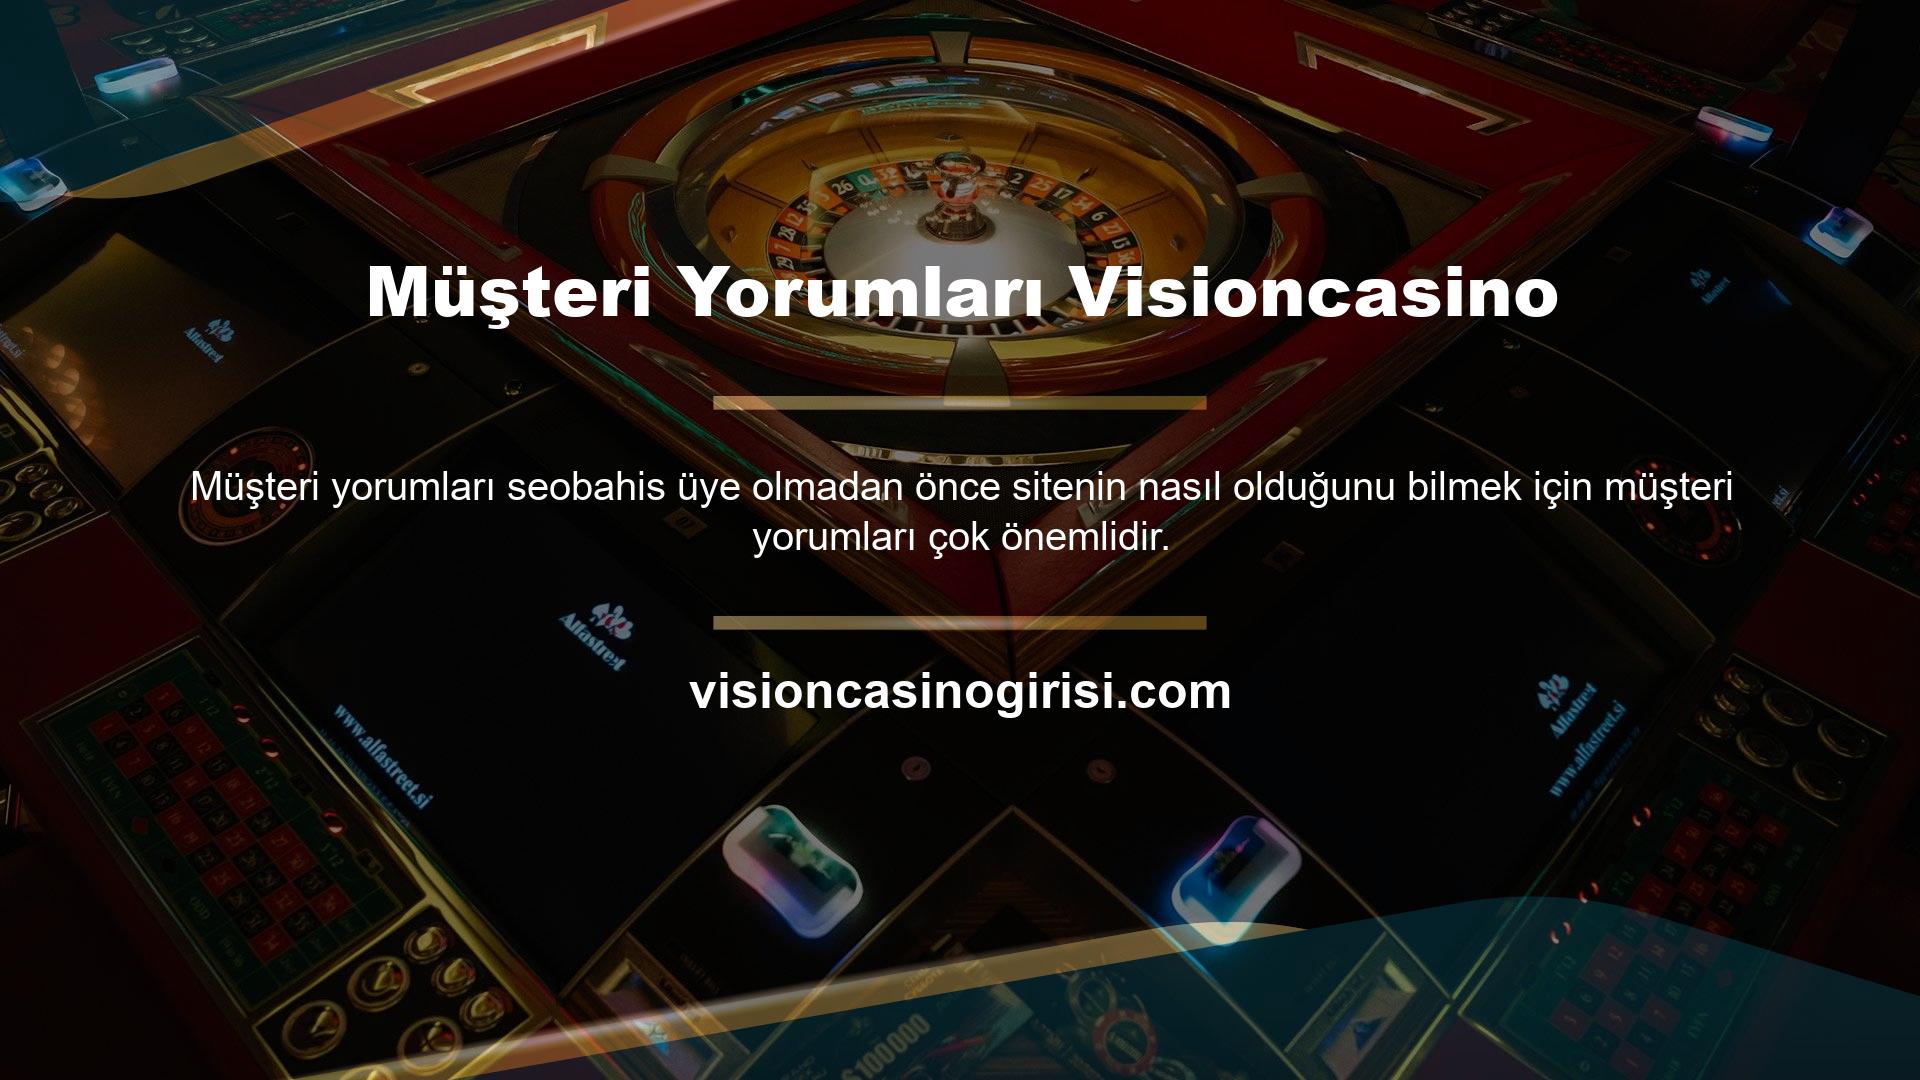 Mevcut Visioncasino üyelerinden ve geçmişteki site ziyaretçilerinden gelen müşteri yorumları çok olumlu